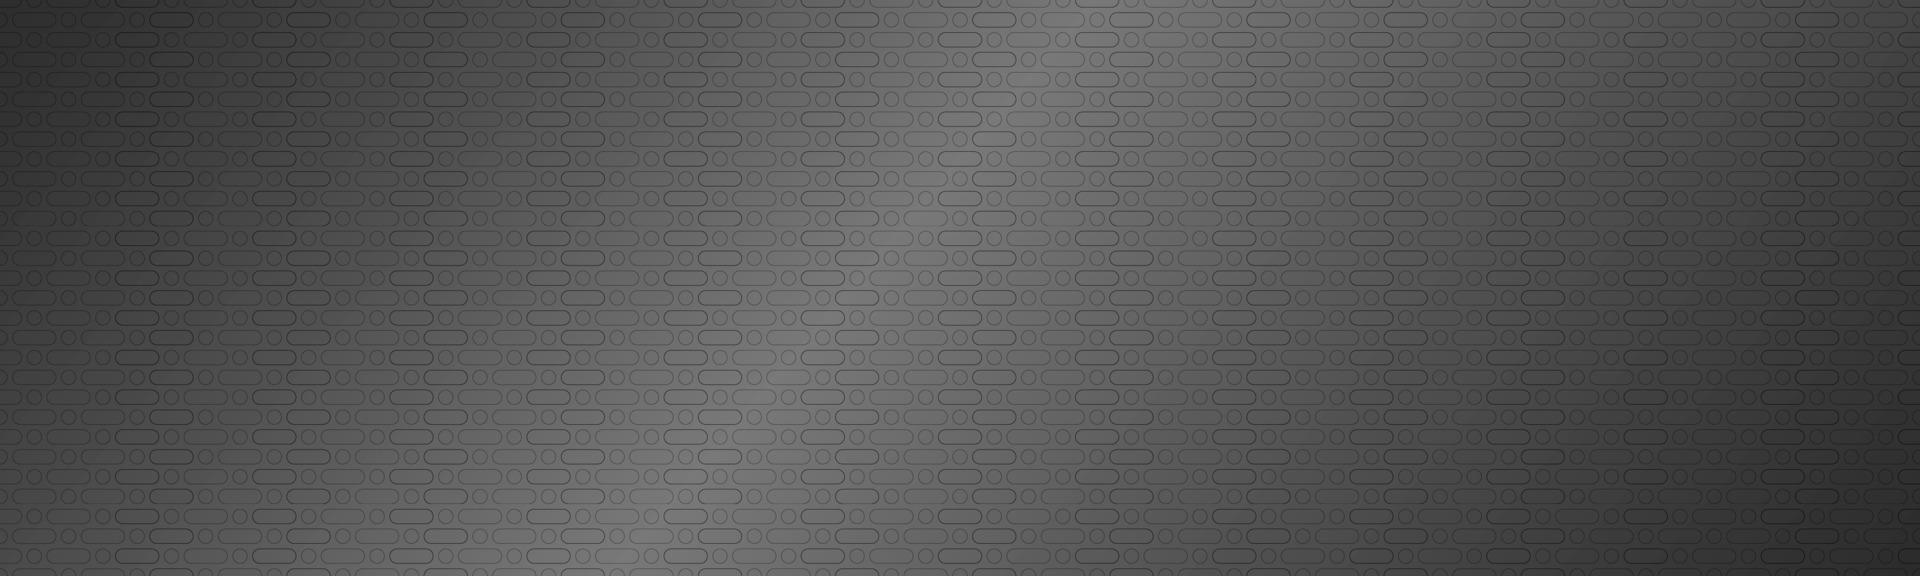 Cabecera metalizada gris plateada perforada. textura de metal. banner de ilustración de texnology simple. círculo, rectángulo redondeado y ovalado perforado vector